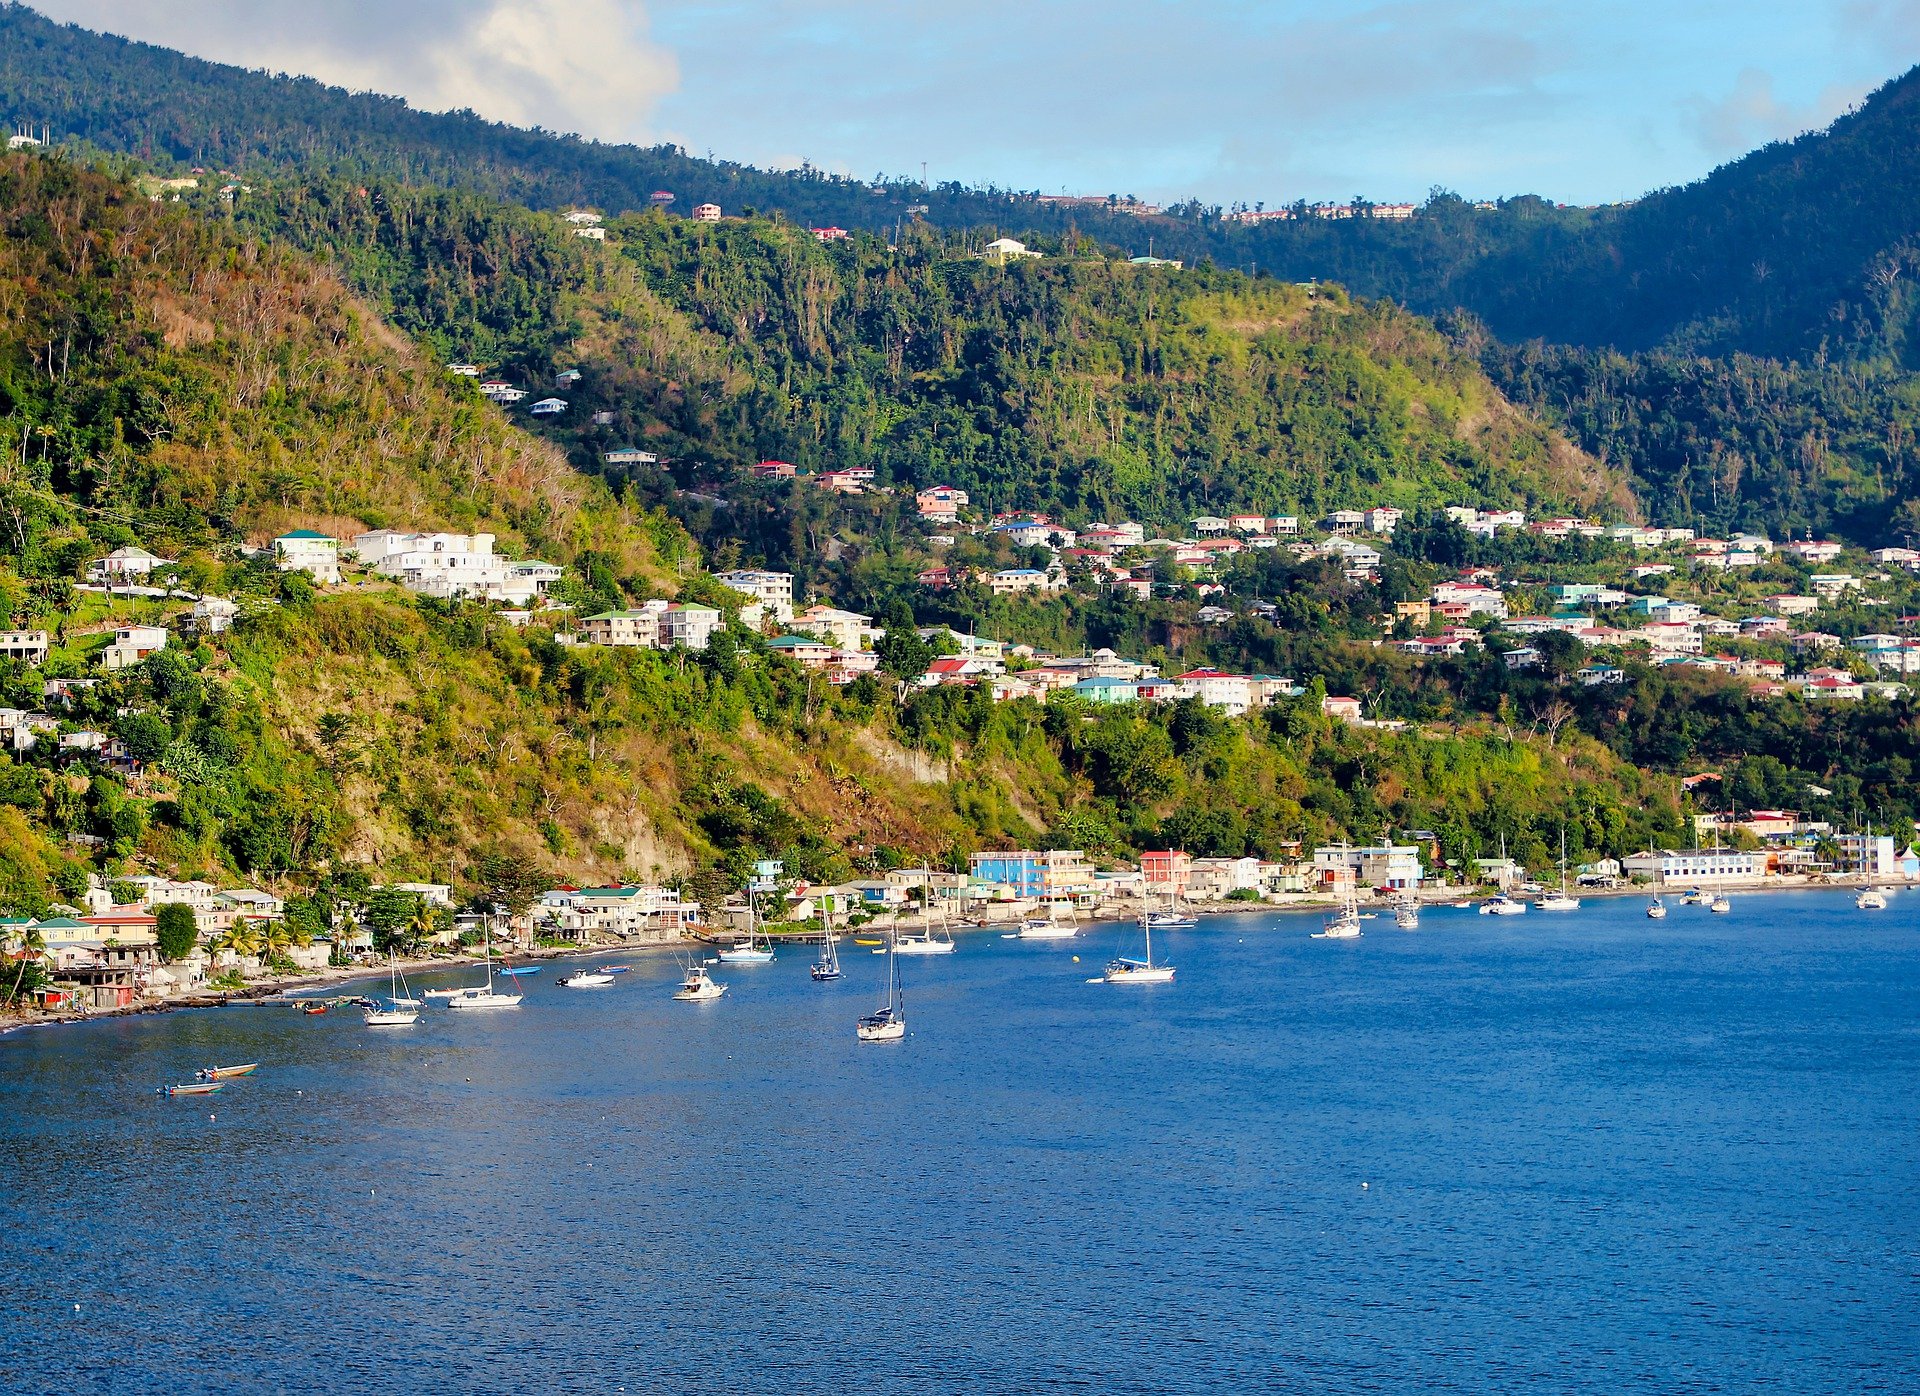 Picture of Roseau in Dominica